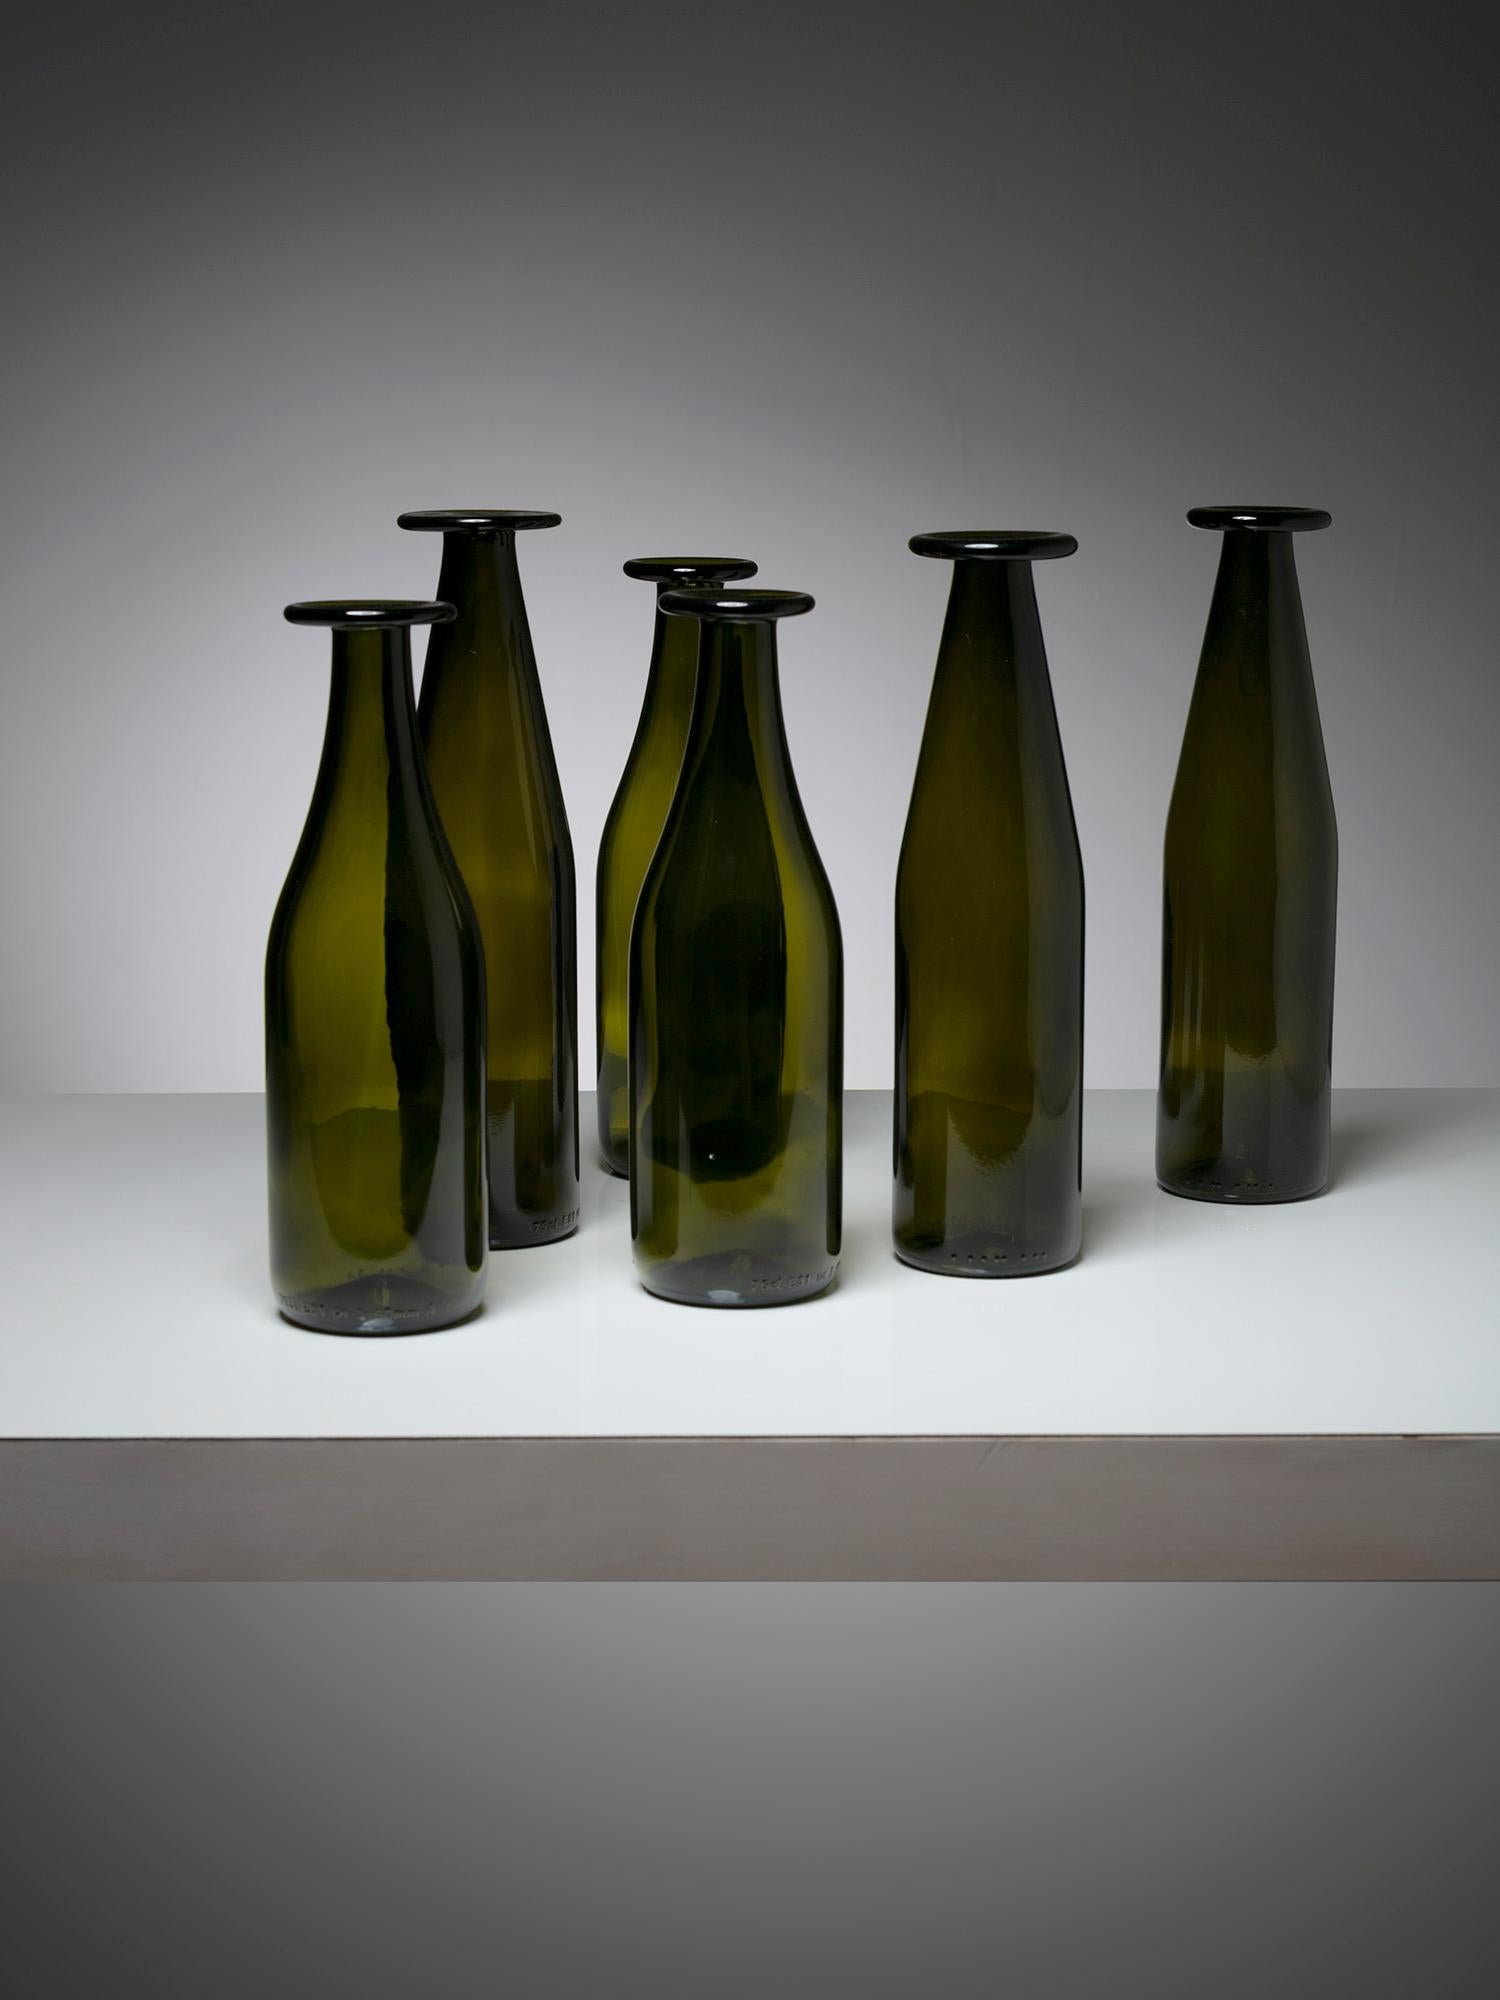 Grand ensemble de bouteilles en verre conçu par Jasper Morrison pour Cappellini.
Différentes tailles et intensités de couleurs pour ces pièces à usage quotidien.
Édition ancienne avec verre lourd ; la taille se réfère à la grande pièce.